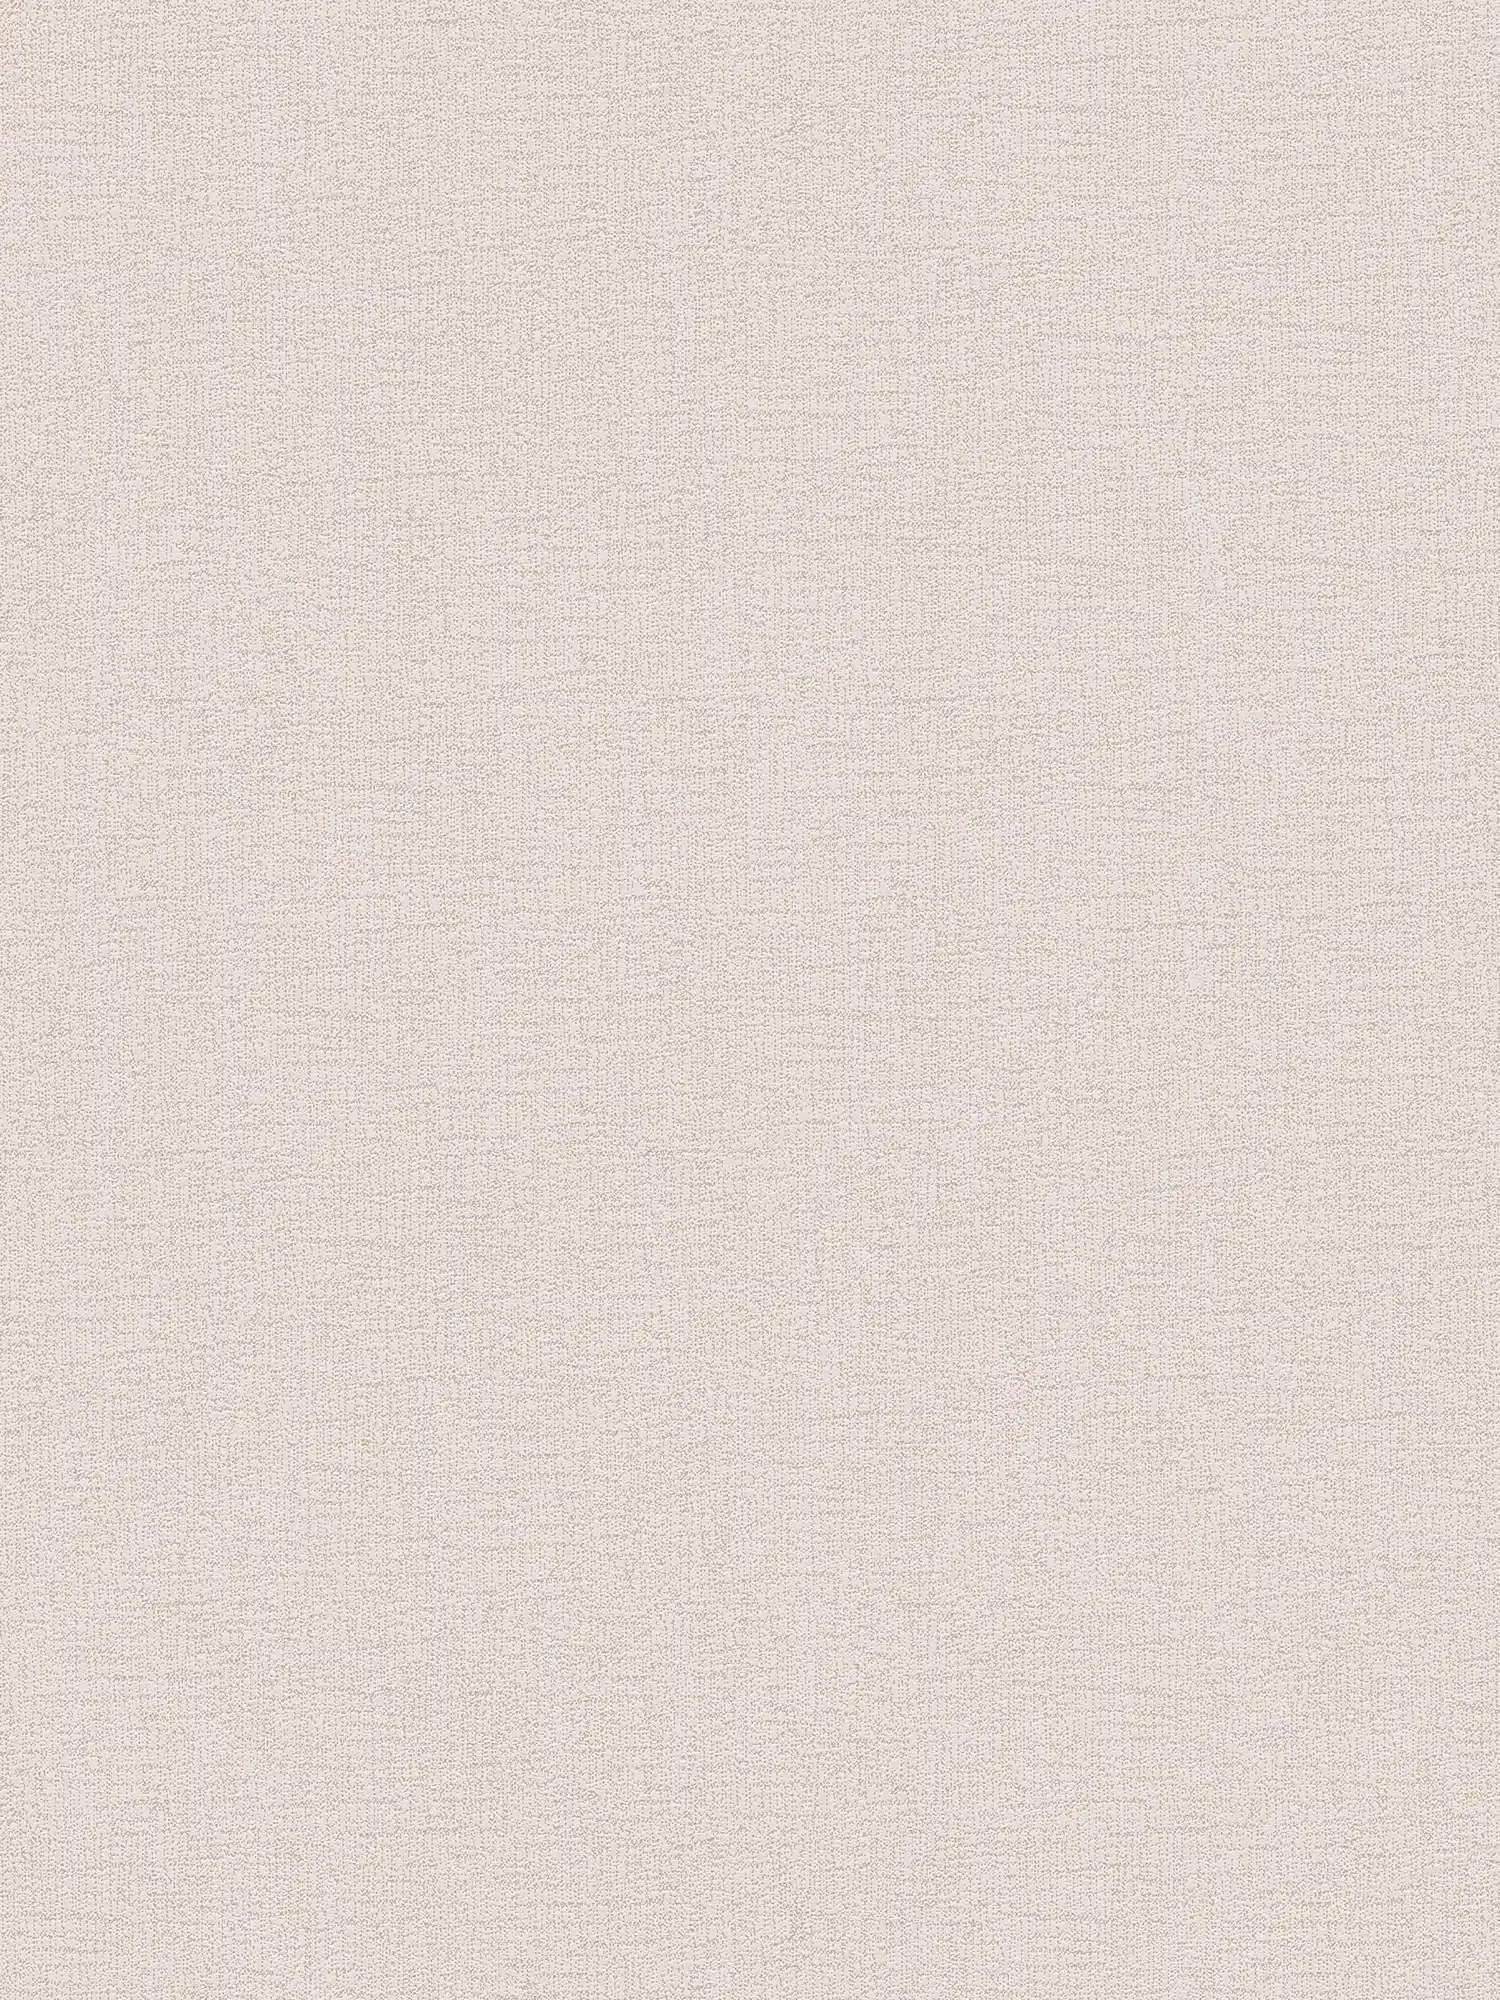 Wallpaper light beige linen look with textured pattern - beige
